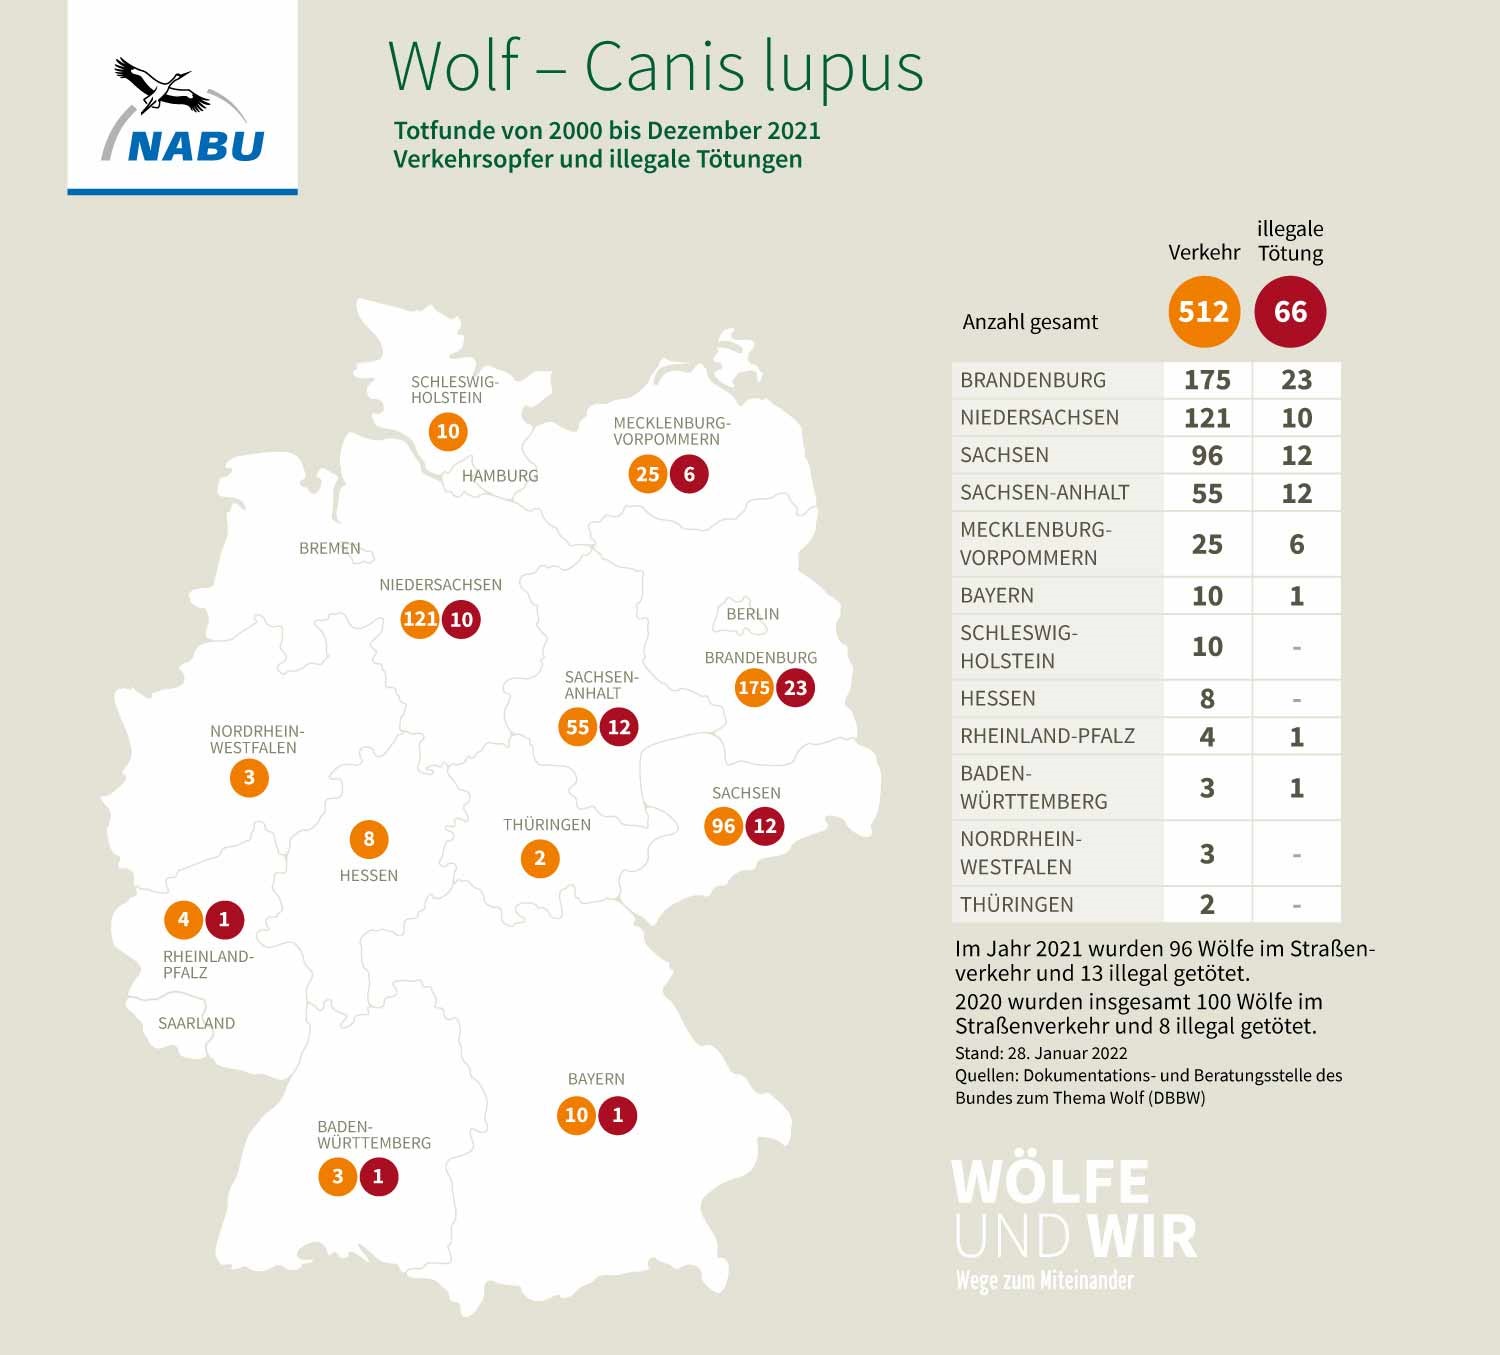 Totfunde von Wölfen in Deutschland von 2000 bis Dezember 2021